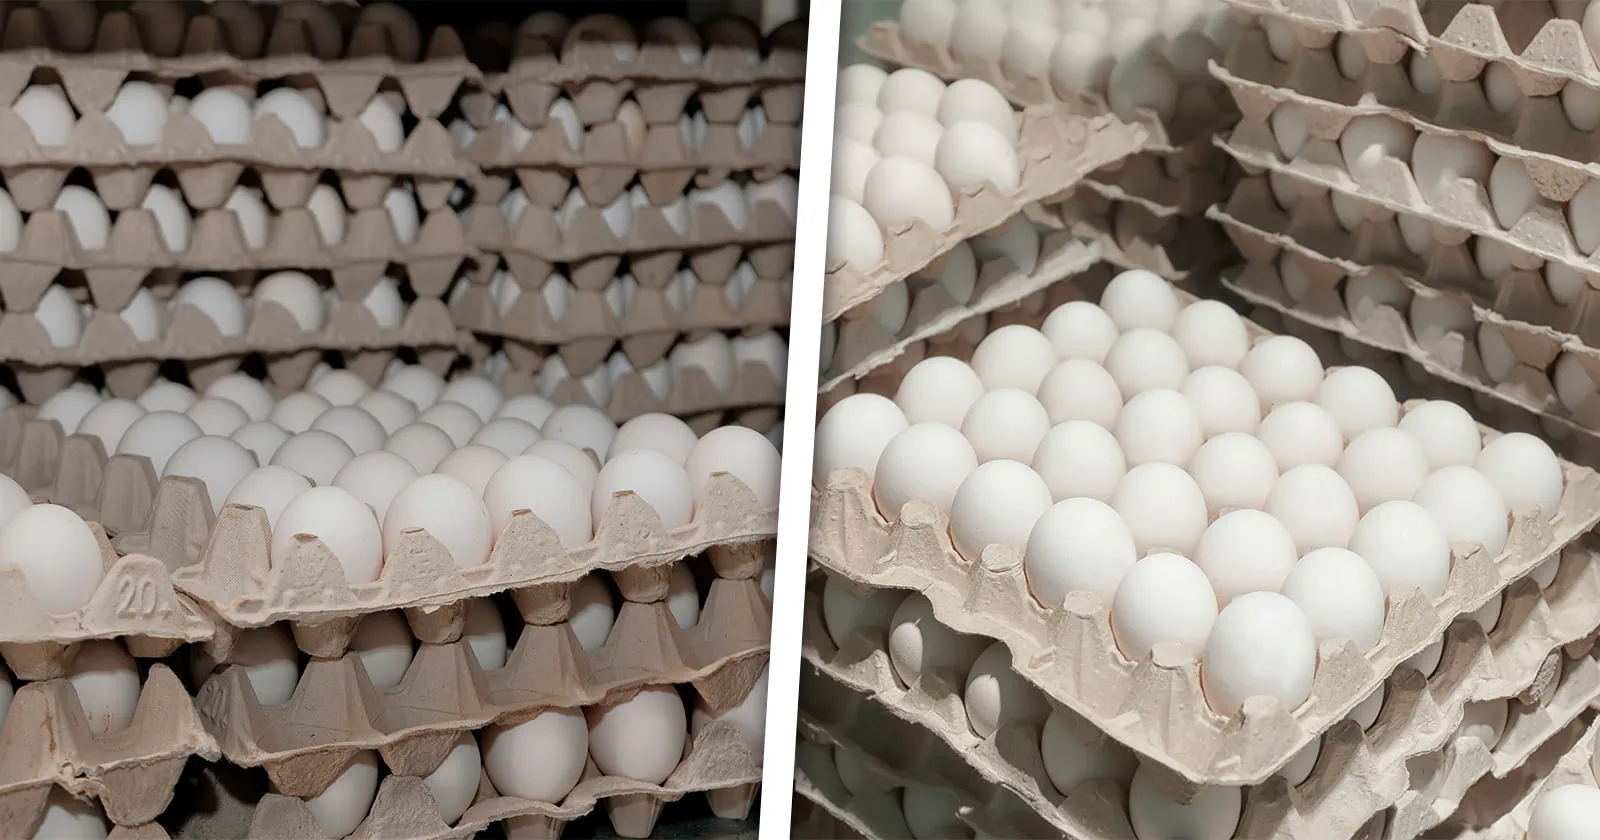 Informan del Envío de Huevos Desde un País Latinoamericano Hacia Cuba